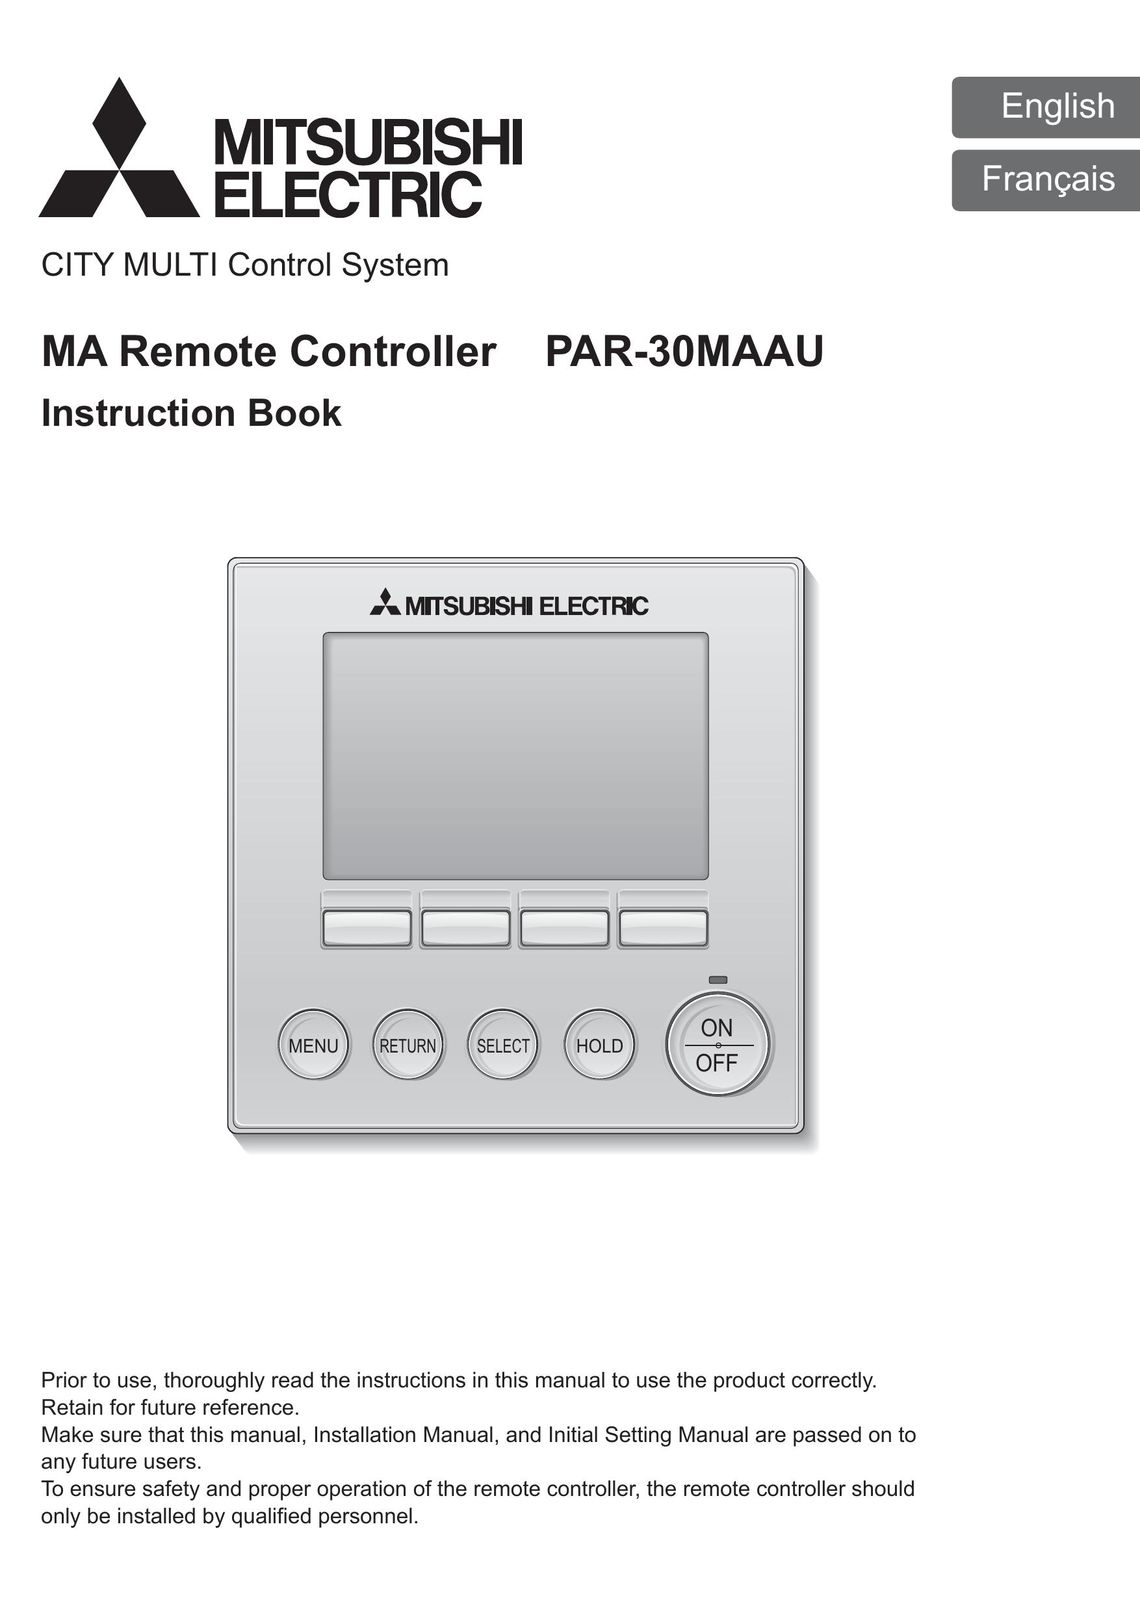 Mitsubishi Electronics PAR-30MAAU Fan User Manual